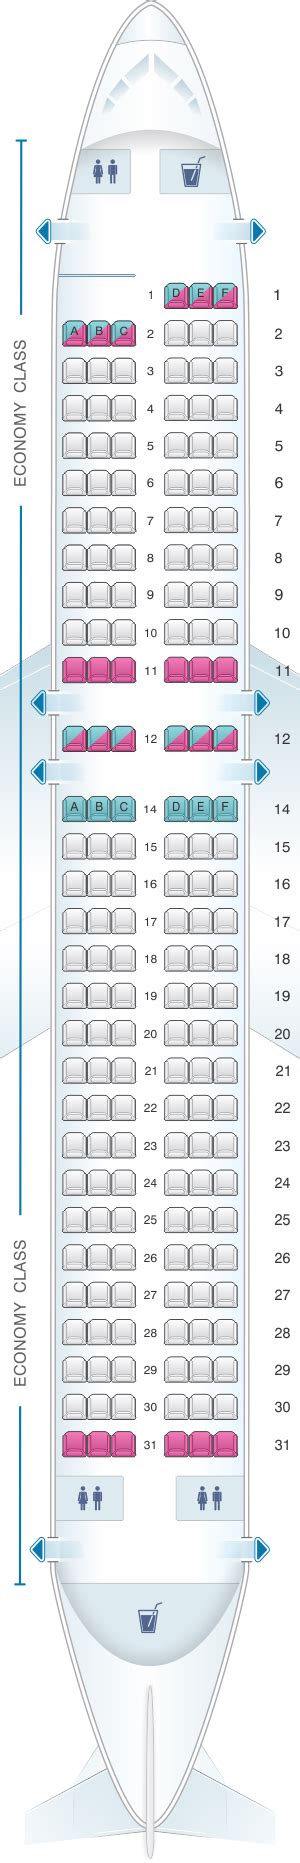 Allegiant Plane Seating Chart - Yedaamartad. Allegiant a